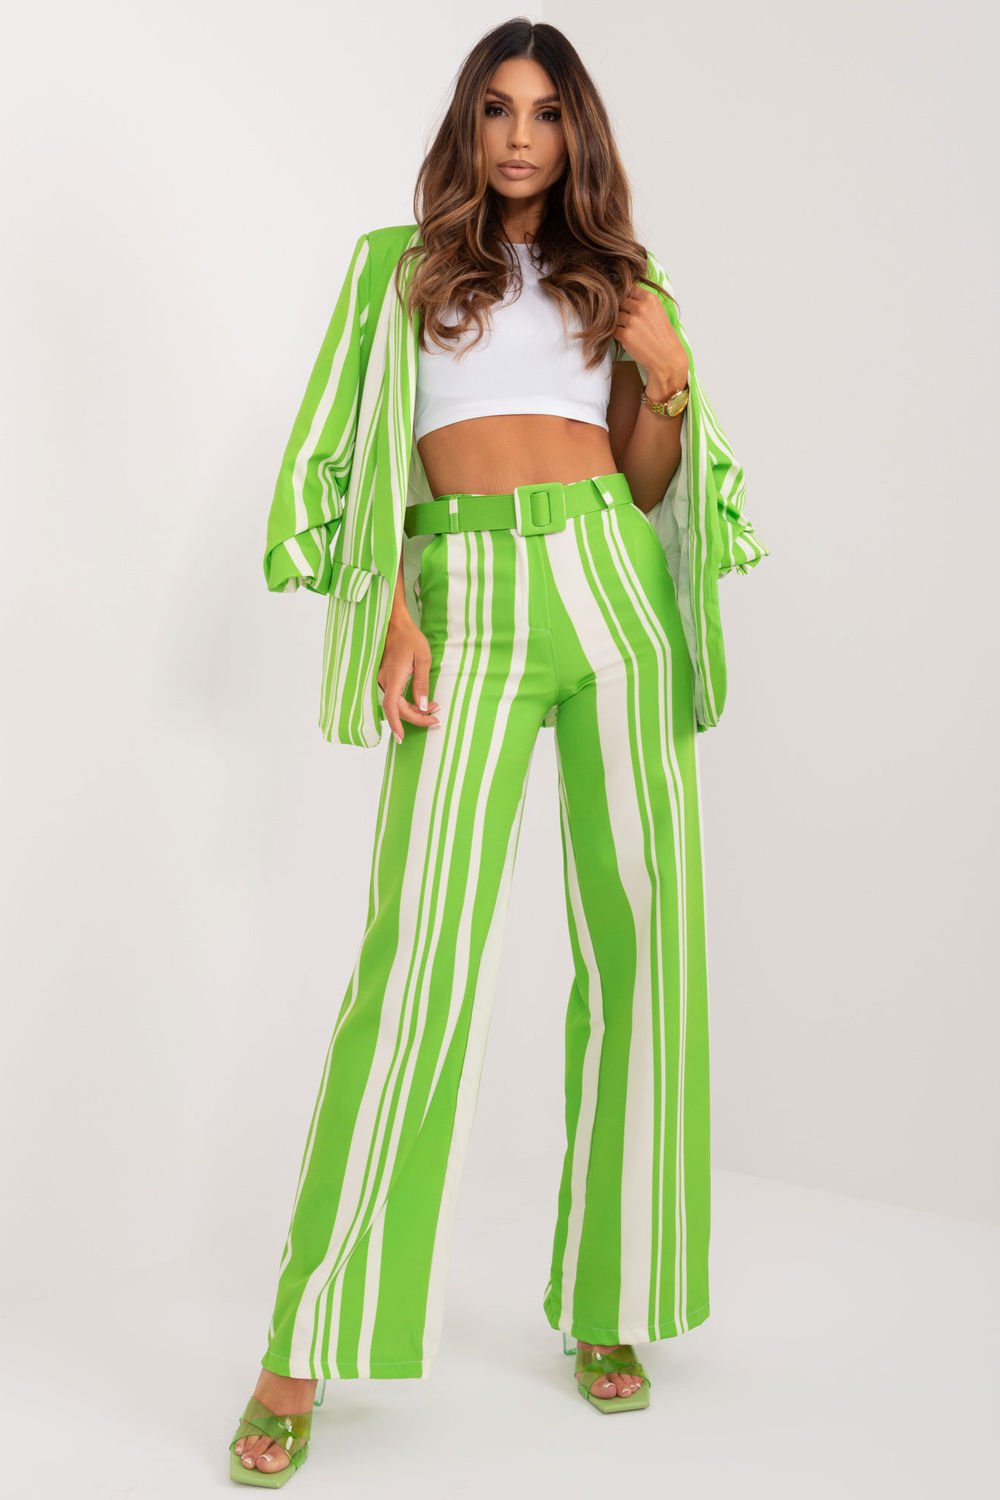  Women trousers model 197041 Italy Moda  green